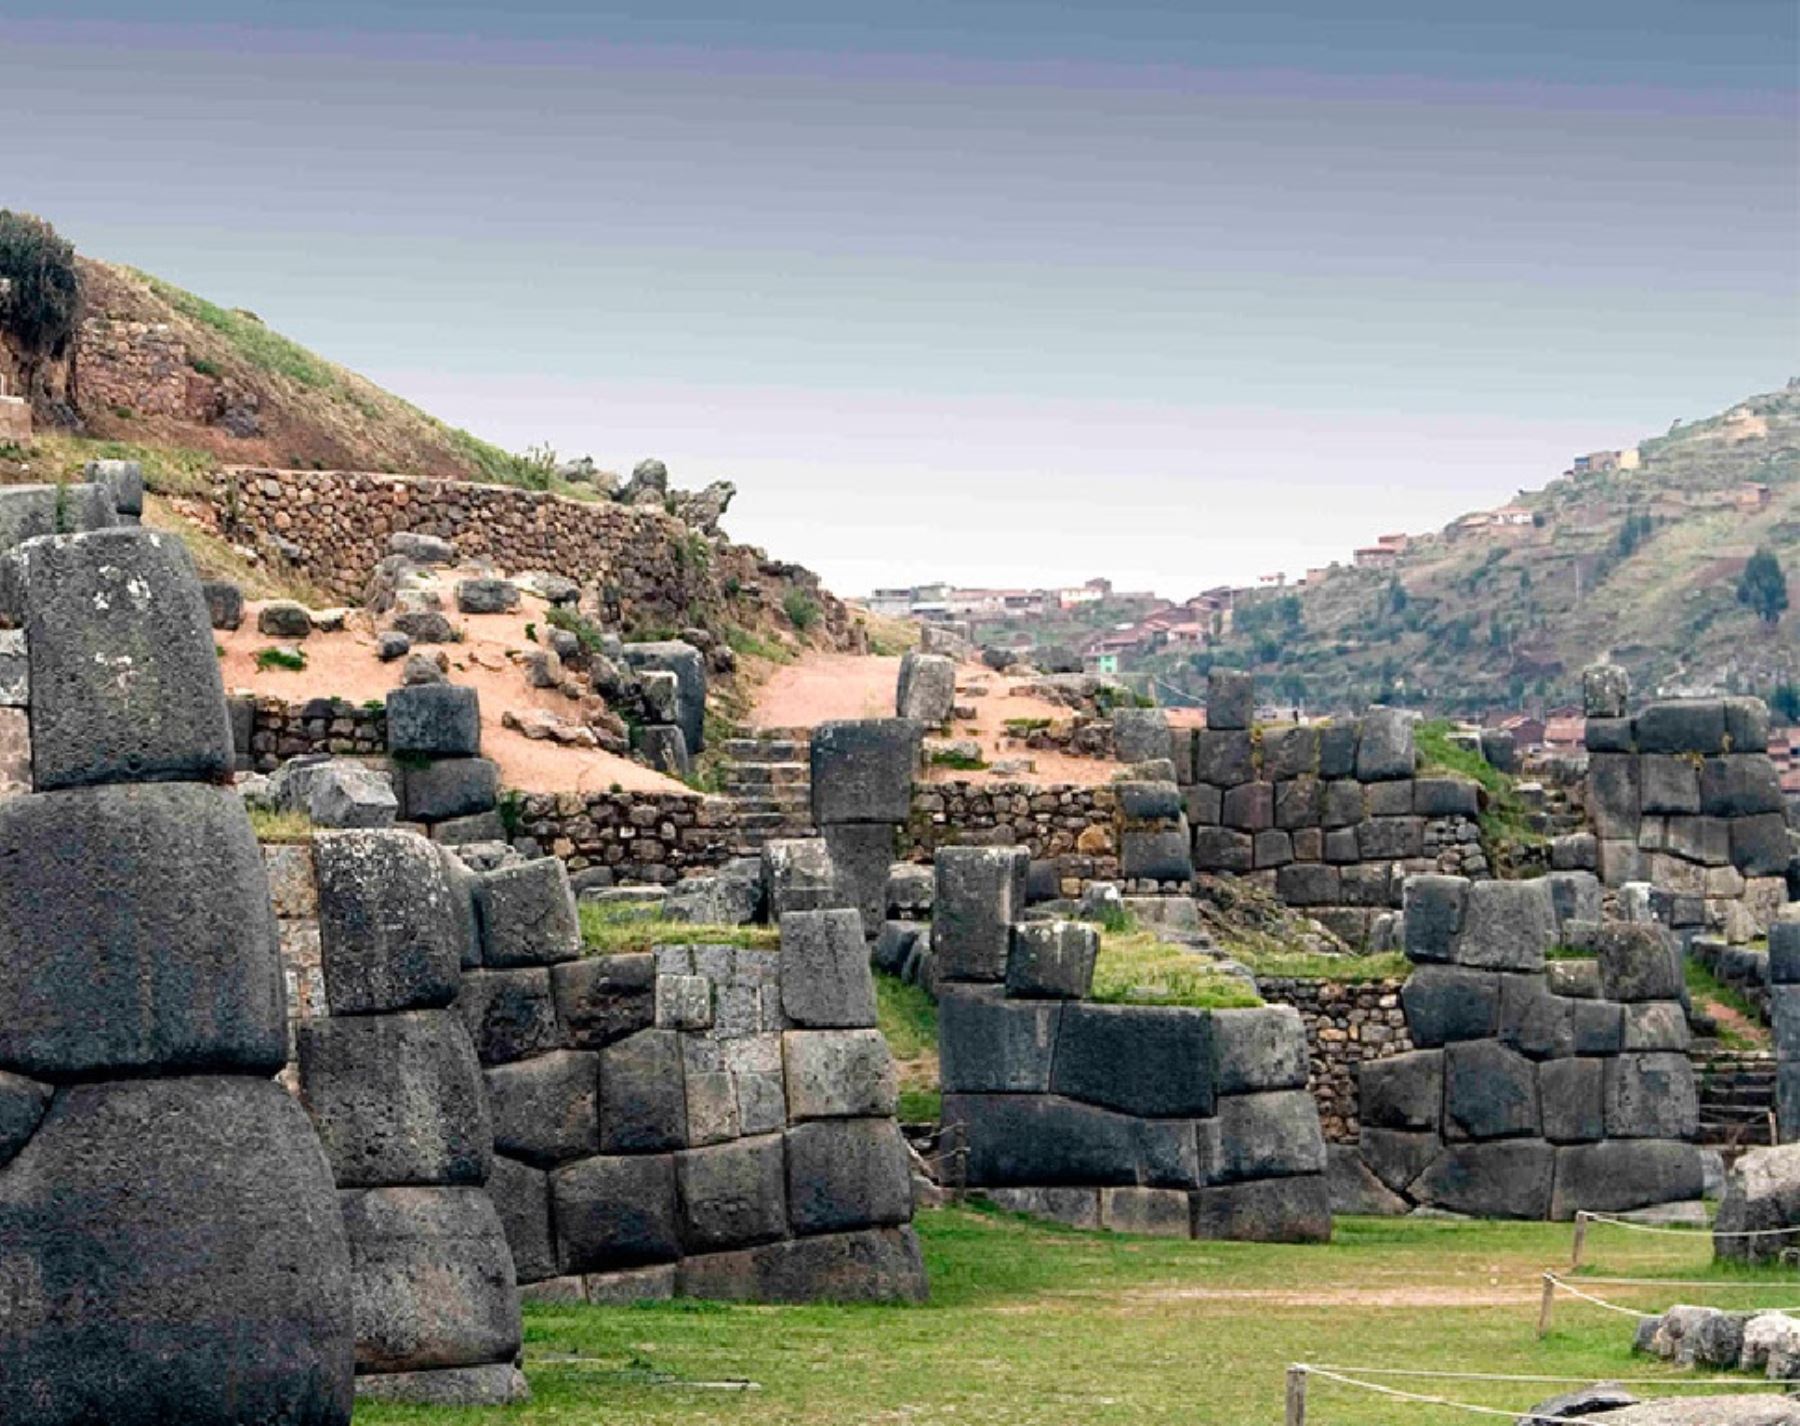 El parque arqueológico Sacsayhuamán es uno de los más importantes sitios arqueológicos de Cusco alternos a Machu Picchu que puedes visitar con el boleto turístico.